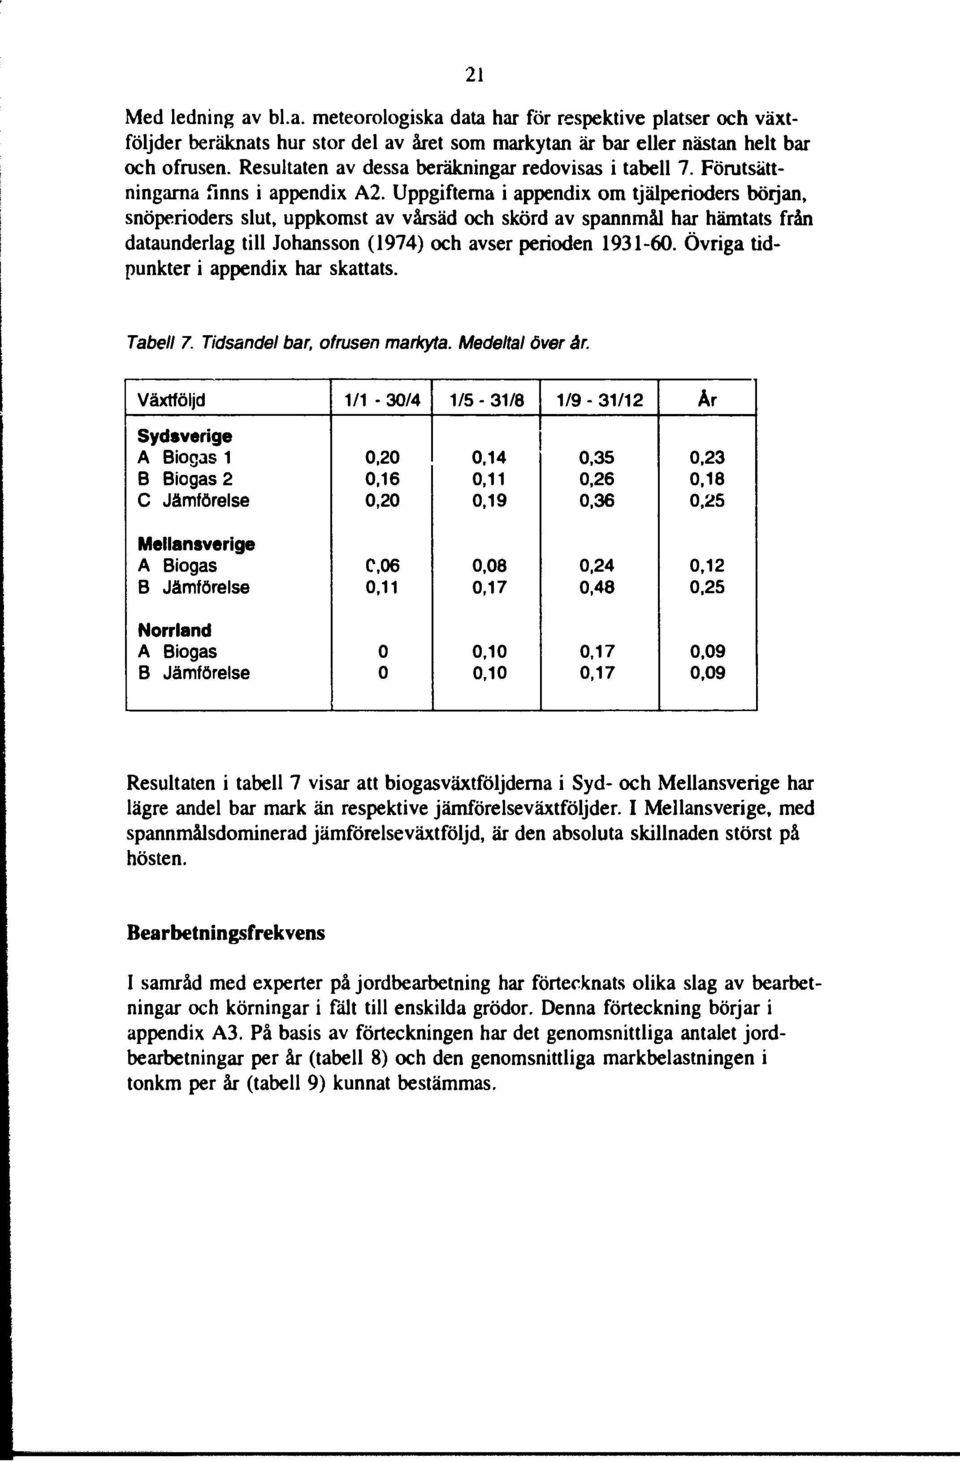 Uppgifterna i appendix om tjälperioders början, snöperioders slut, uppkomst av vårsäd och skörd av spannmål har hämtats från dataunderlag till Johansson (1974) och avser perioden 193160.